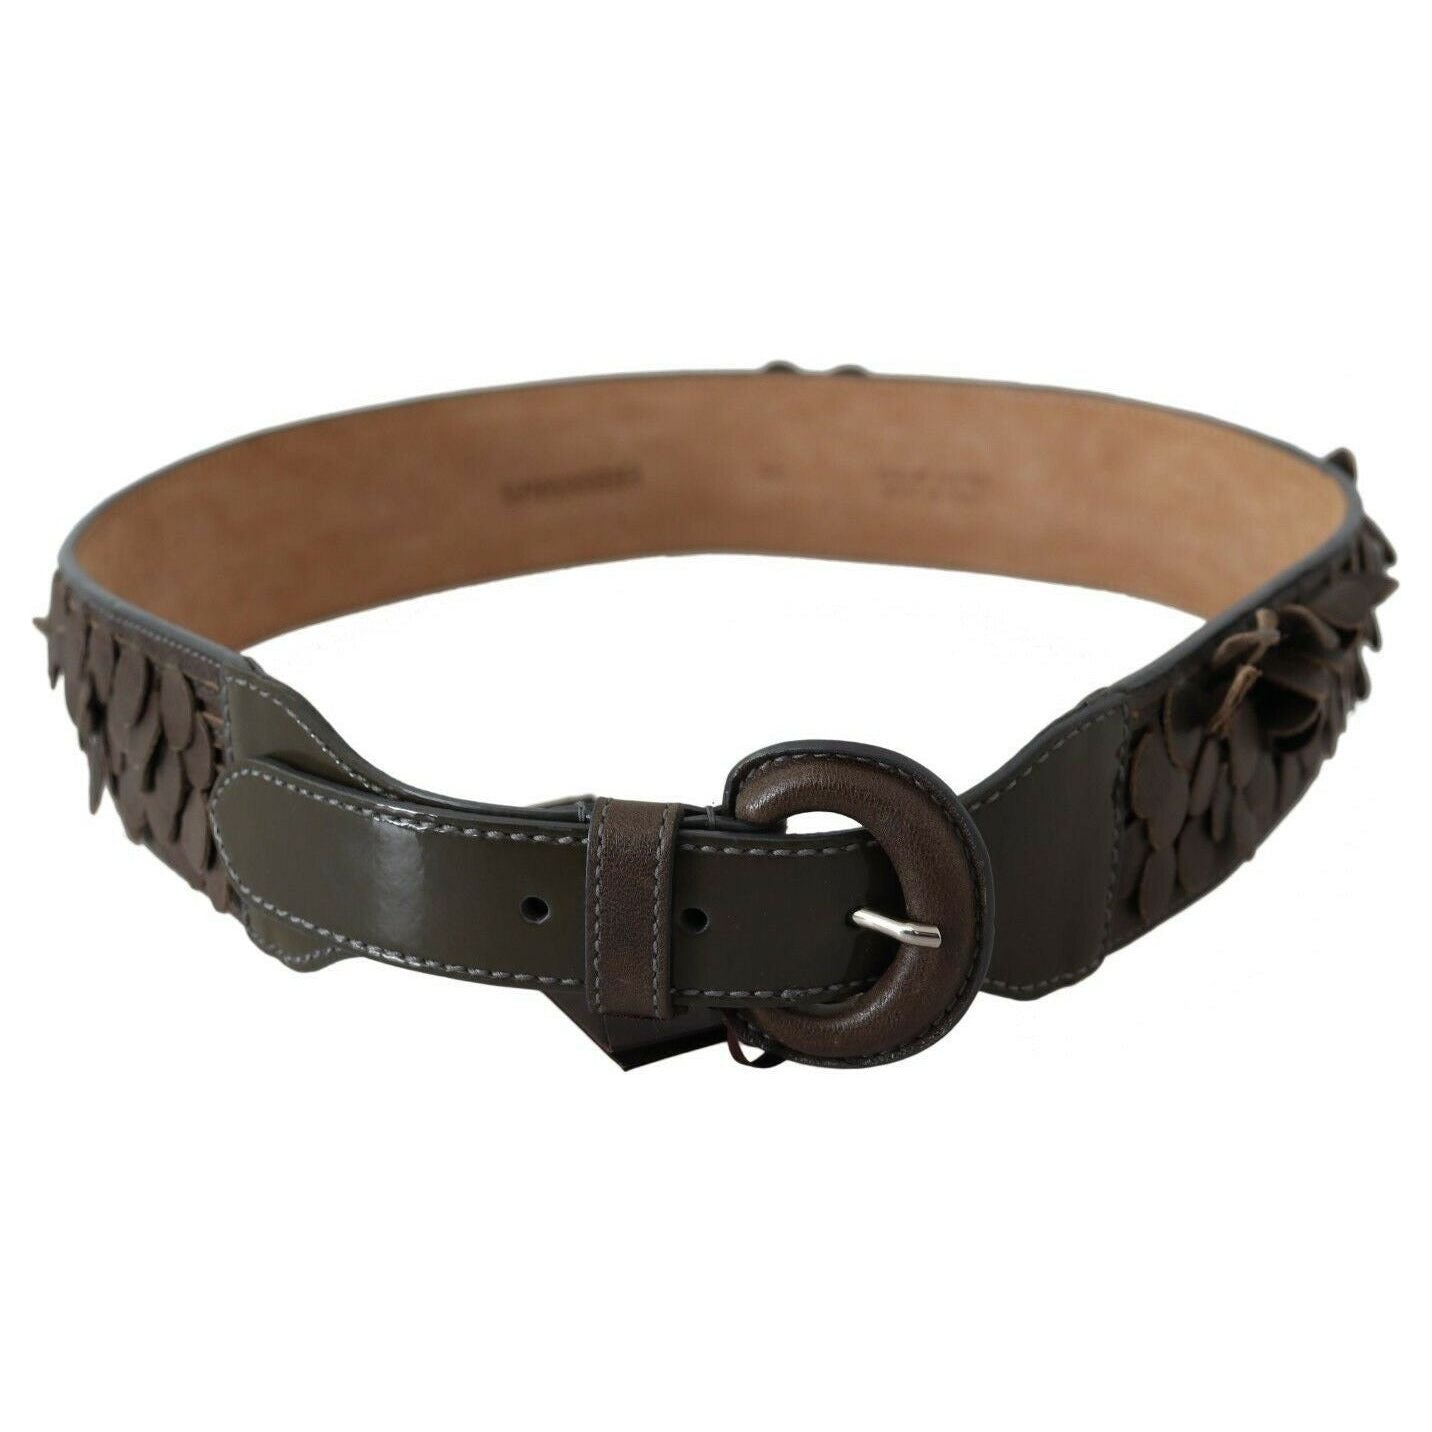 Ermanno Scervino Chic Brown Fringed Leather Fashion Belt dark-brown-leather-round-buckle-waist-belt